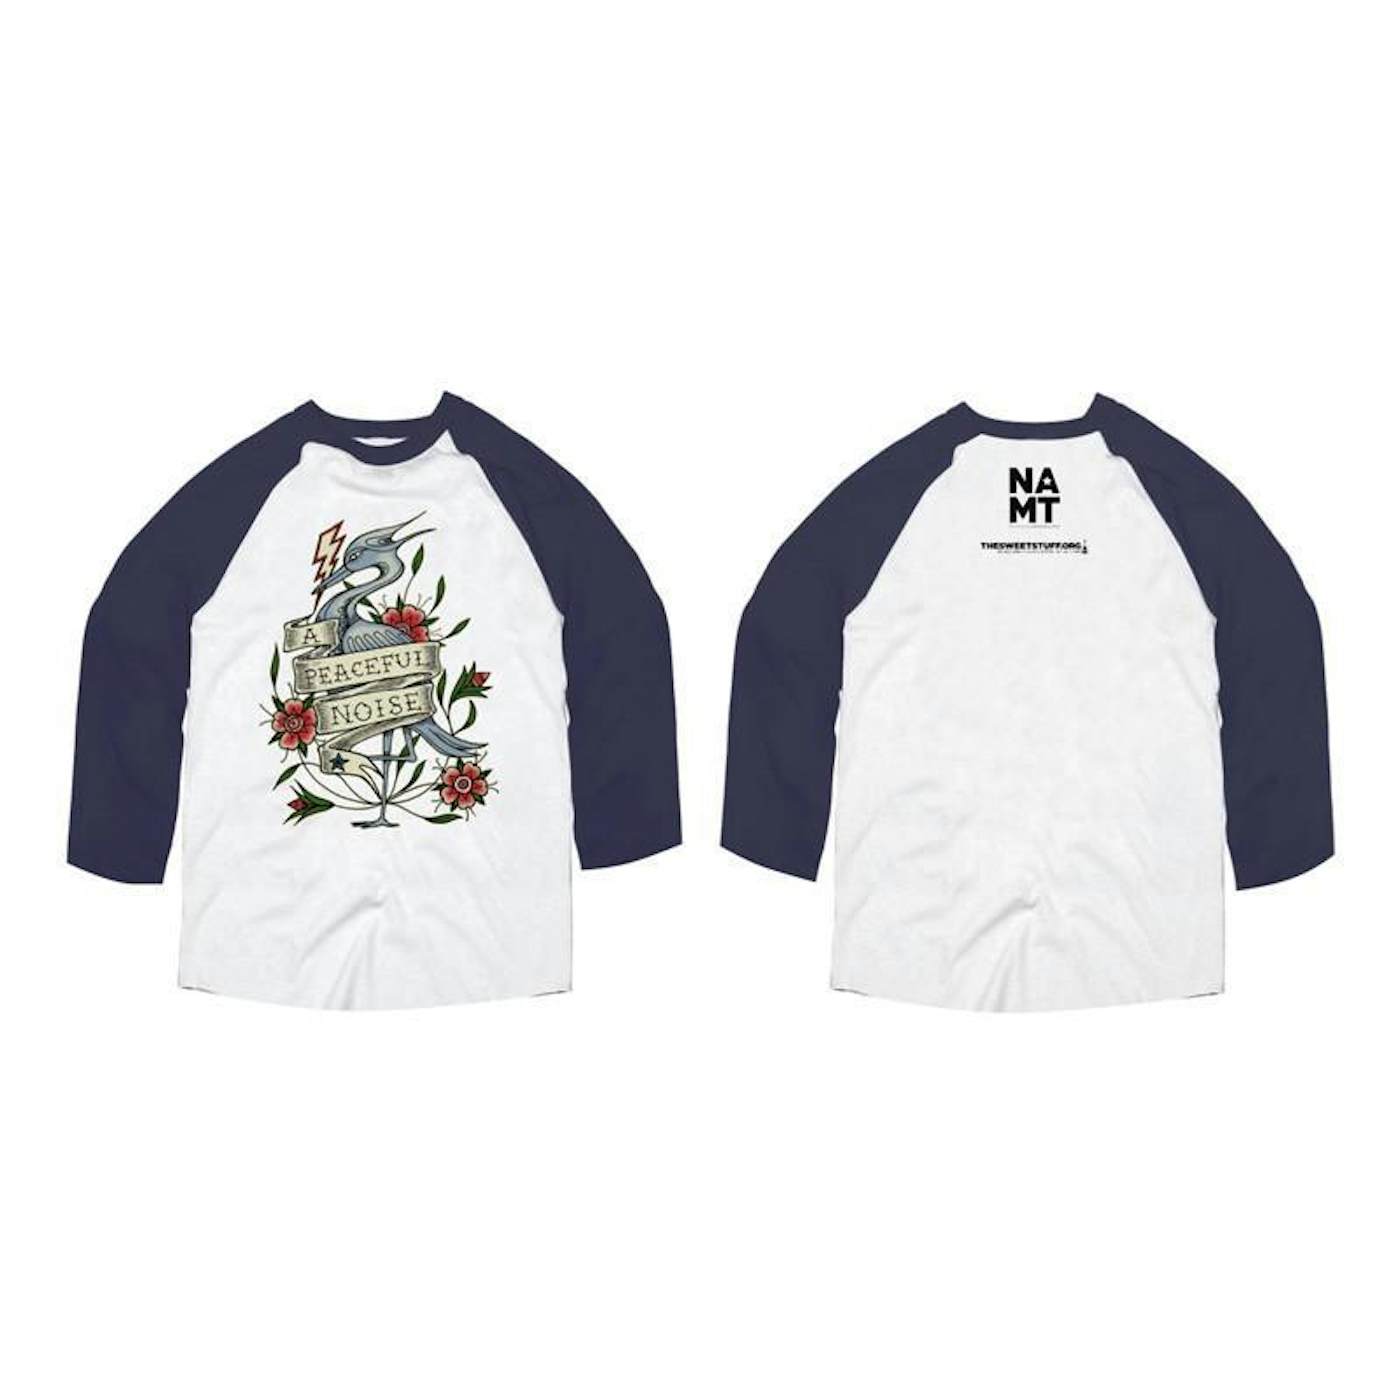 Boston Red Sox Youth V-Neck T-Shirt - White/Navy